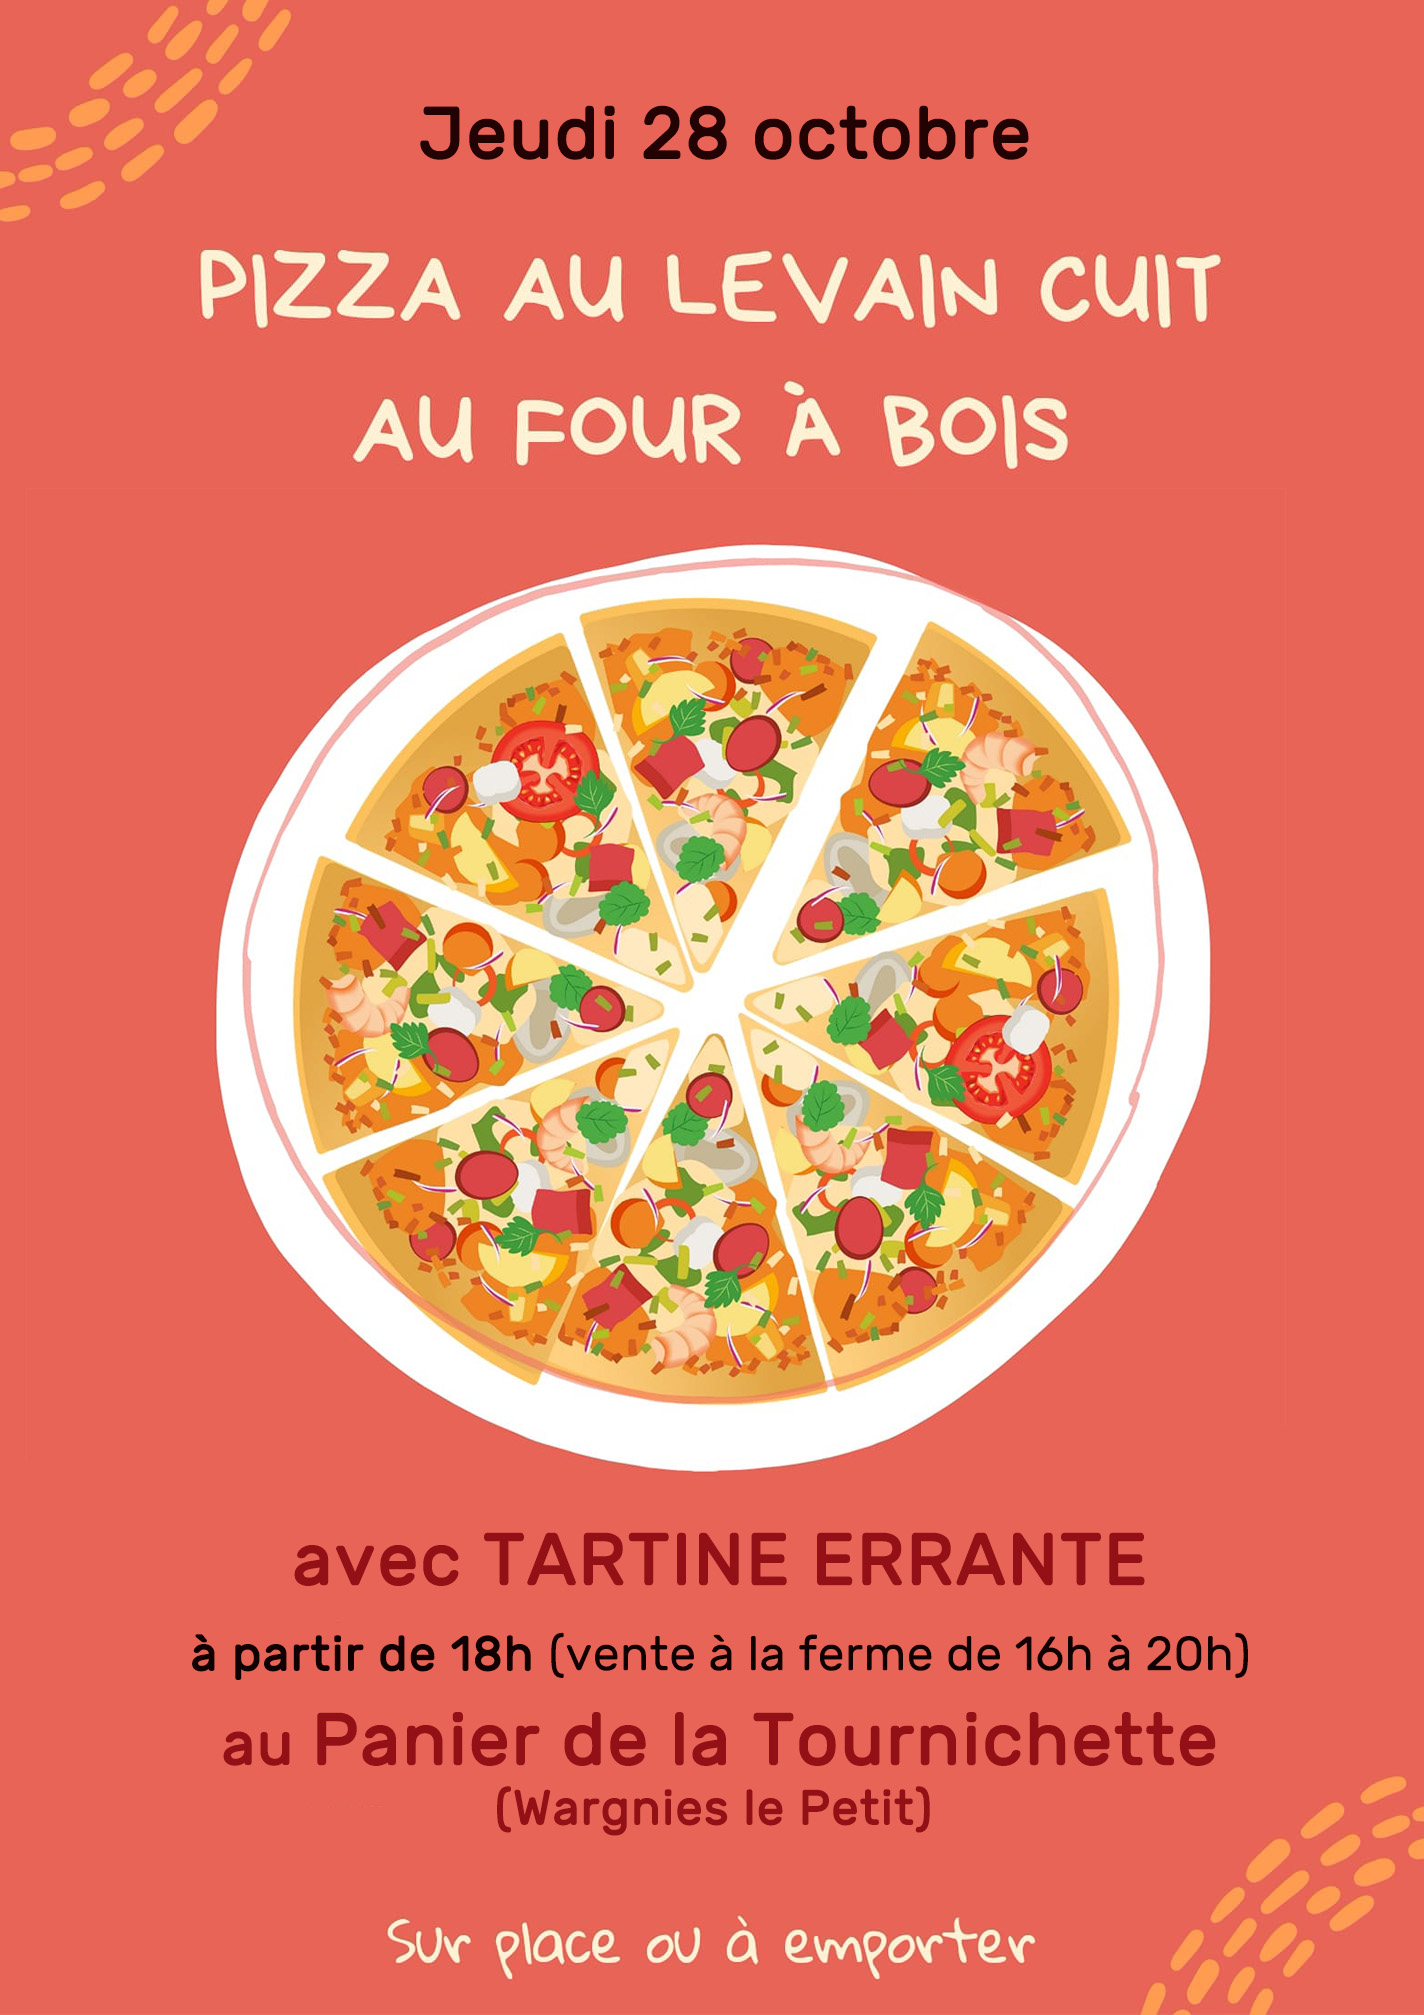 Jeudi 28 octobre, pizza au levain cuit au four à bois par Tartine errante au Panier de la Tournichette